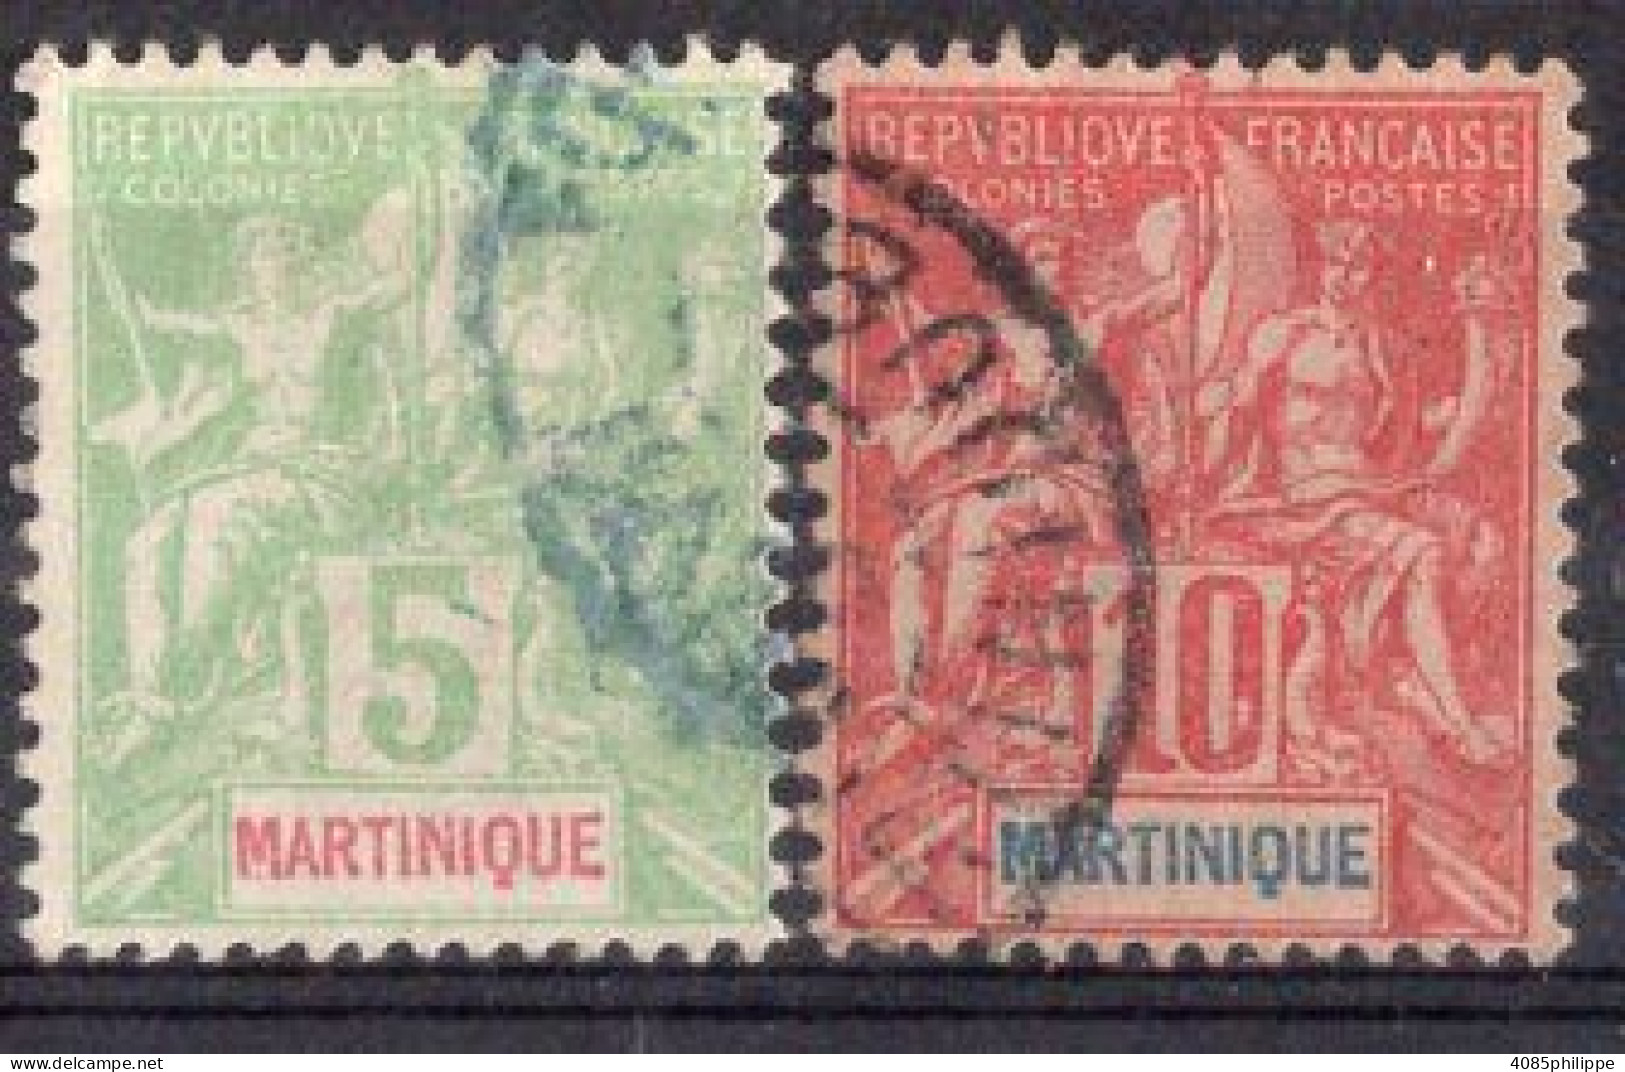 Martinique Timbres-poste N°44 & 45 Oblitérés TB Cote : 4€00 - Gebraucht